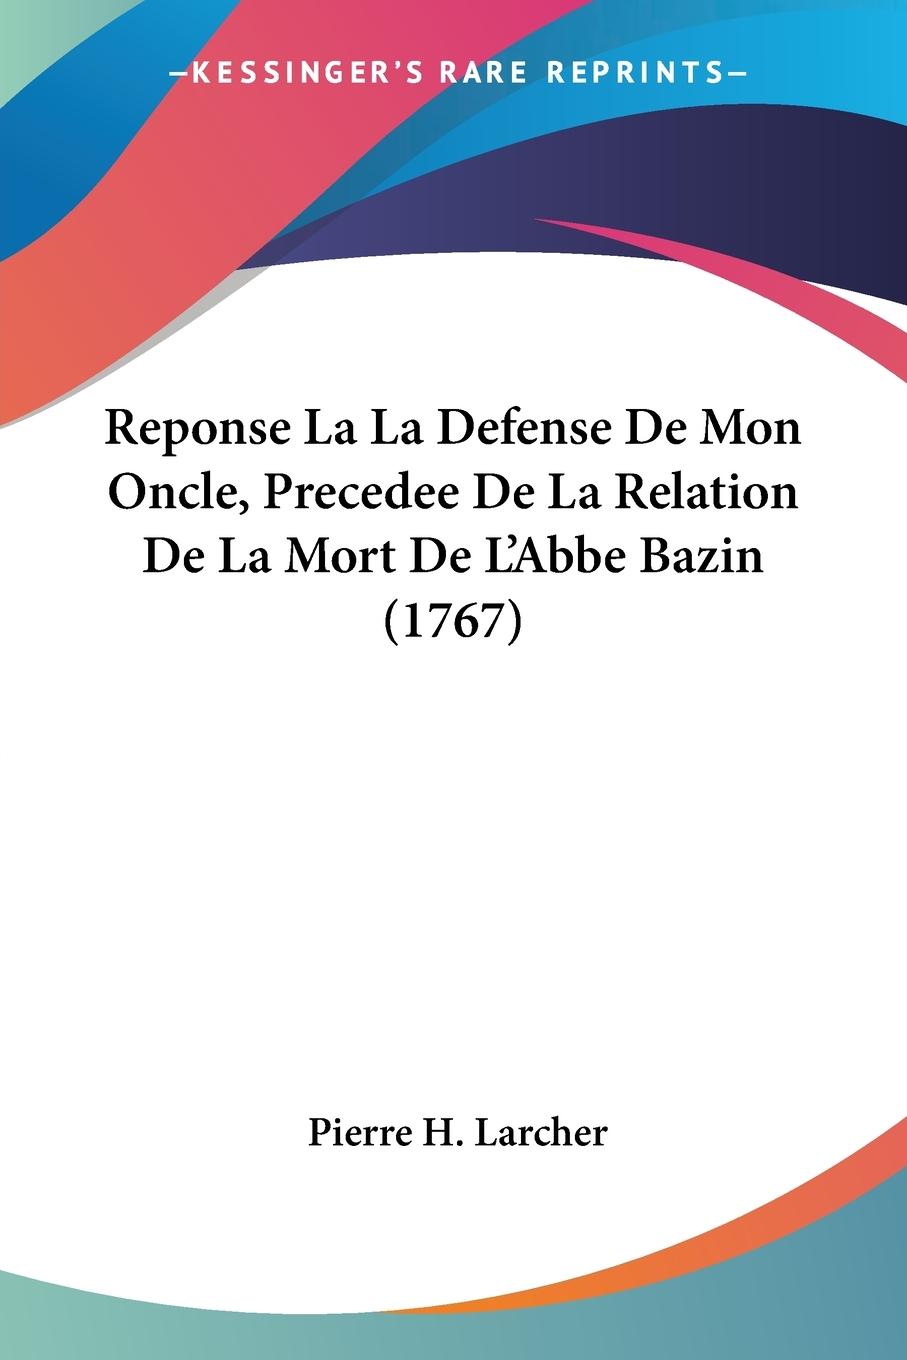 Reponse La La Defense De Mon Oncle, Precedee De La Relation De La Mort De L Abbe Bazin (1767) - Larcher, Pierre H.